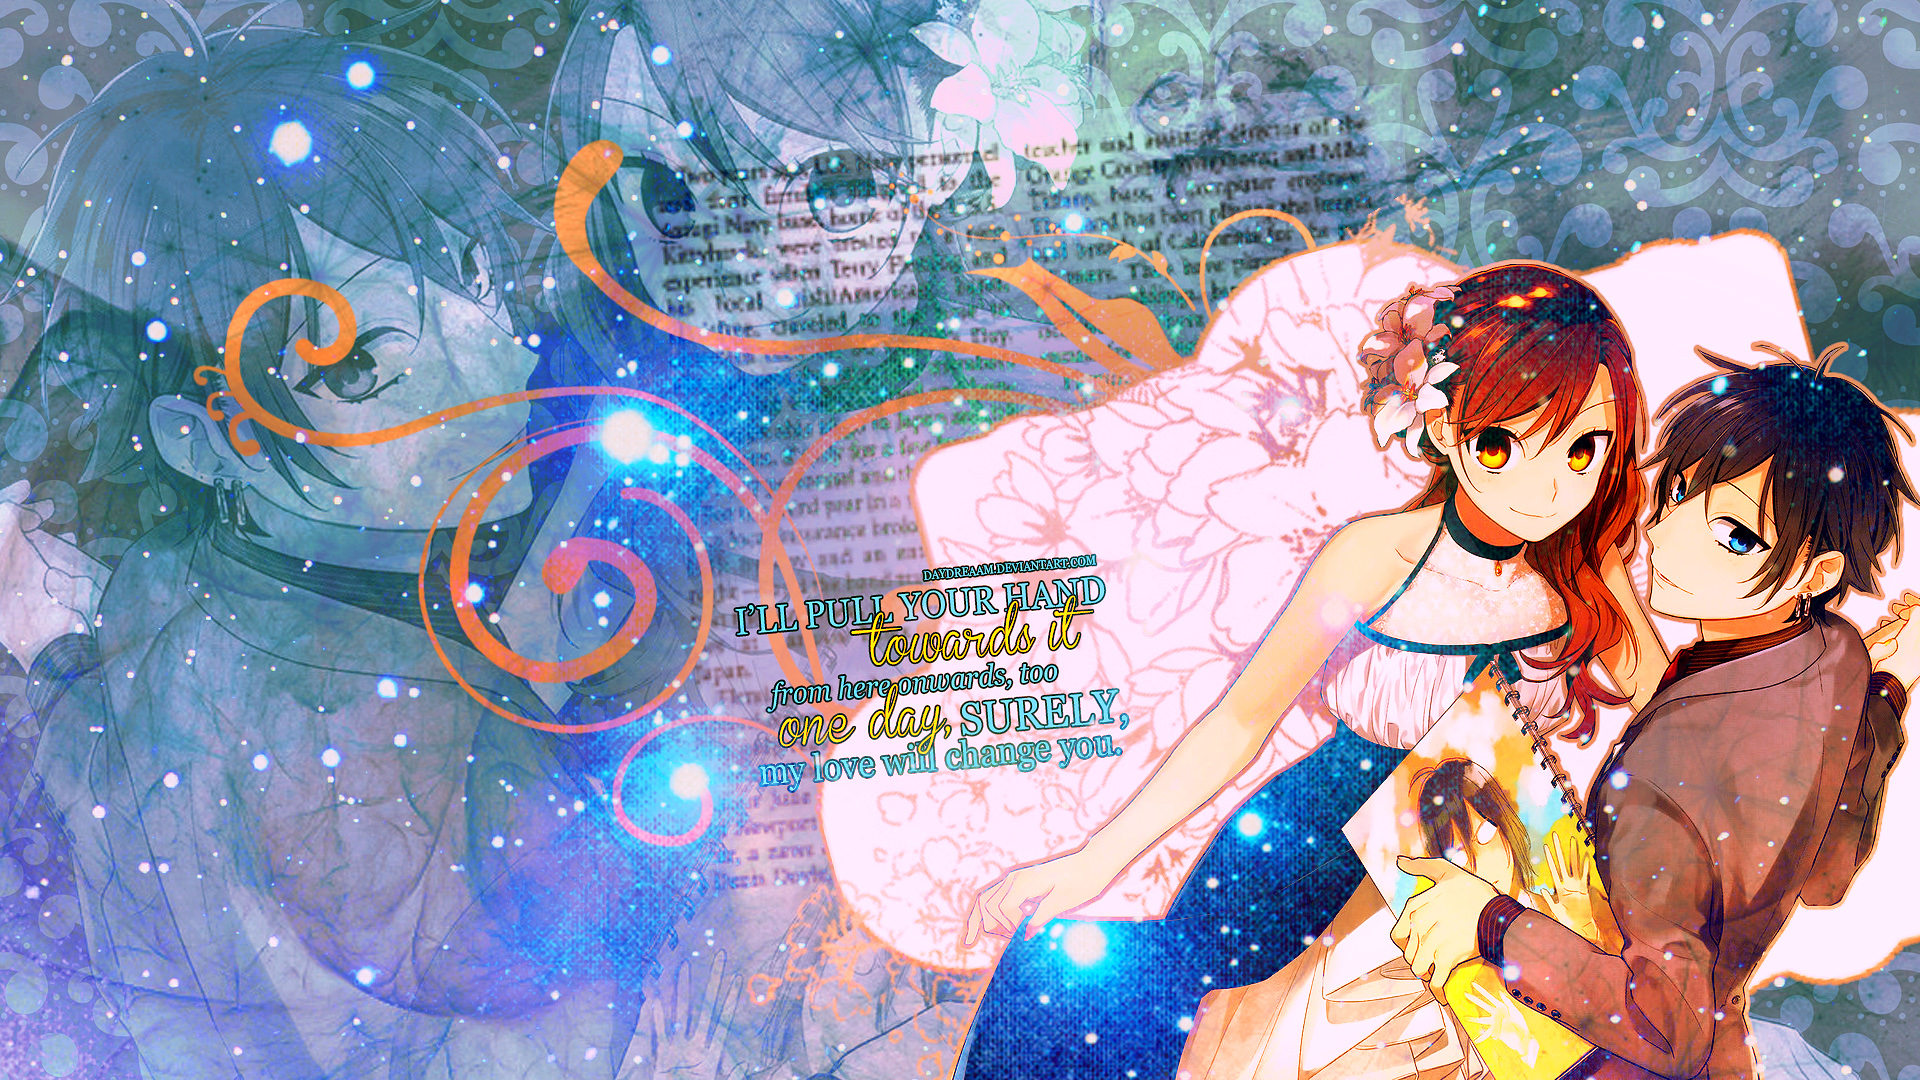 Anime Hori-san To Miyamura-kun HD Wallpaper | Background Image